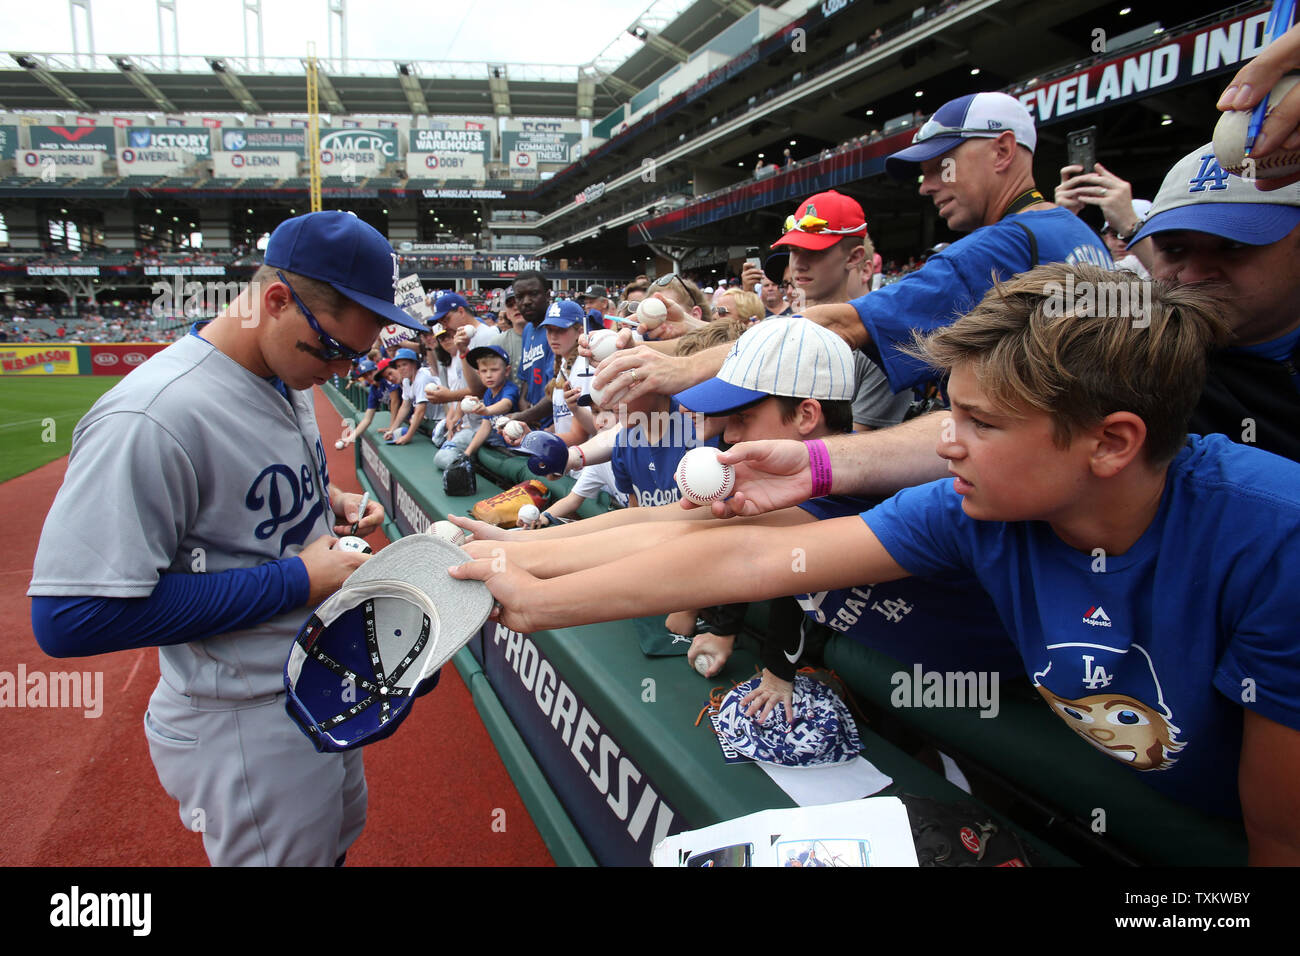 Joc Pederson Los Angeles Dodgers Signed Autographed Blue #31 Jersey –